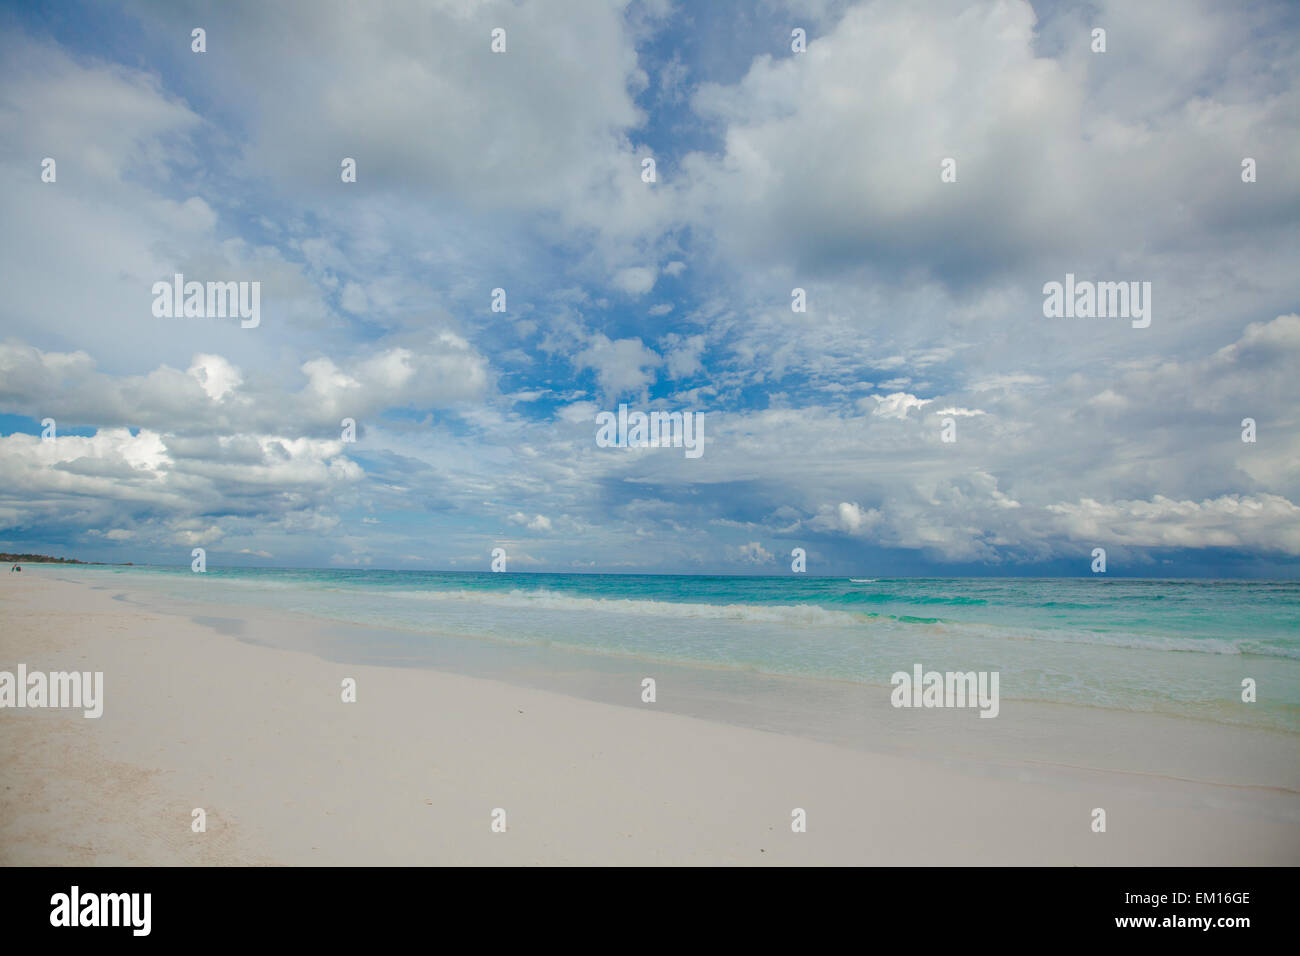 Plage tropical parfait avec de l'eau turquoise et des plages de sable blanc de Tulum, Mexique Banque D'Images